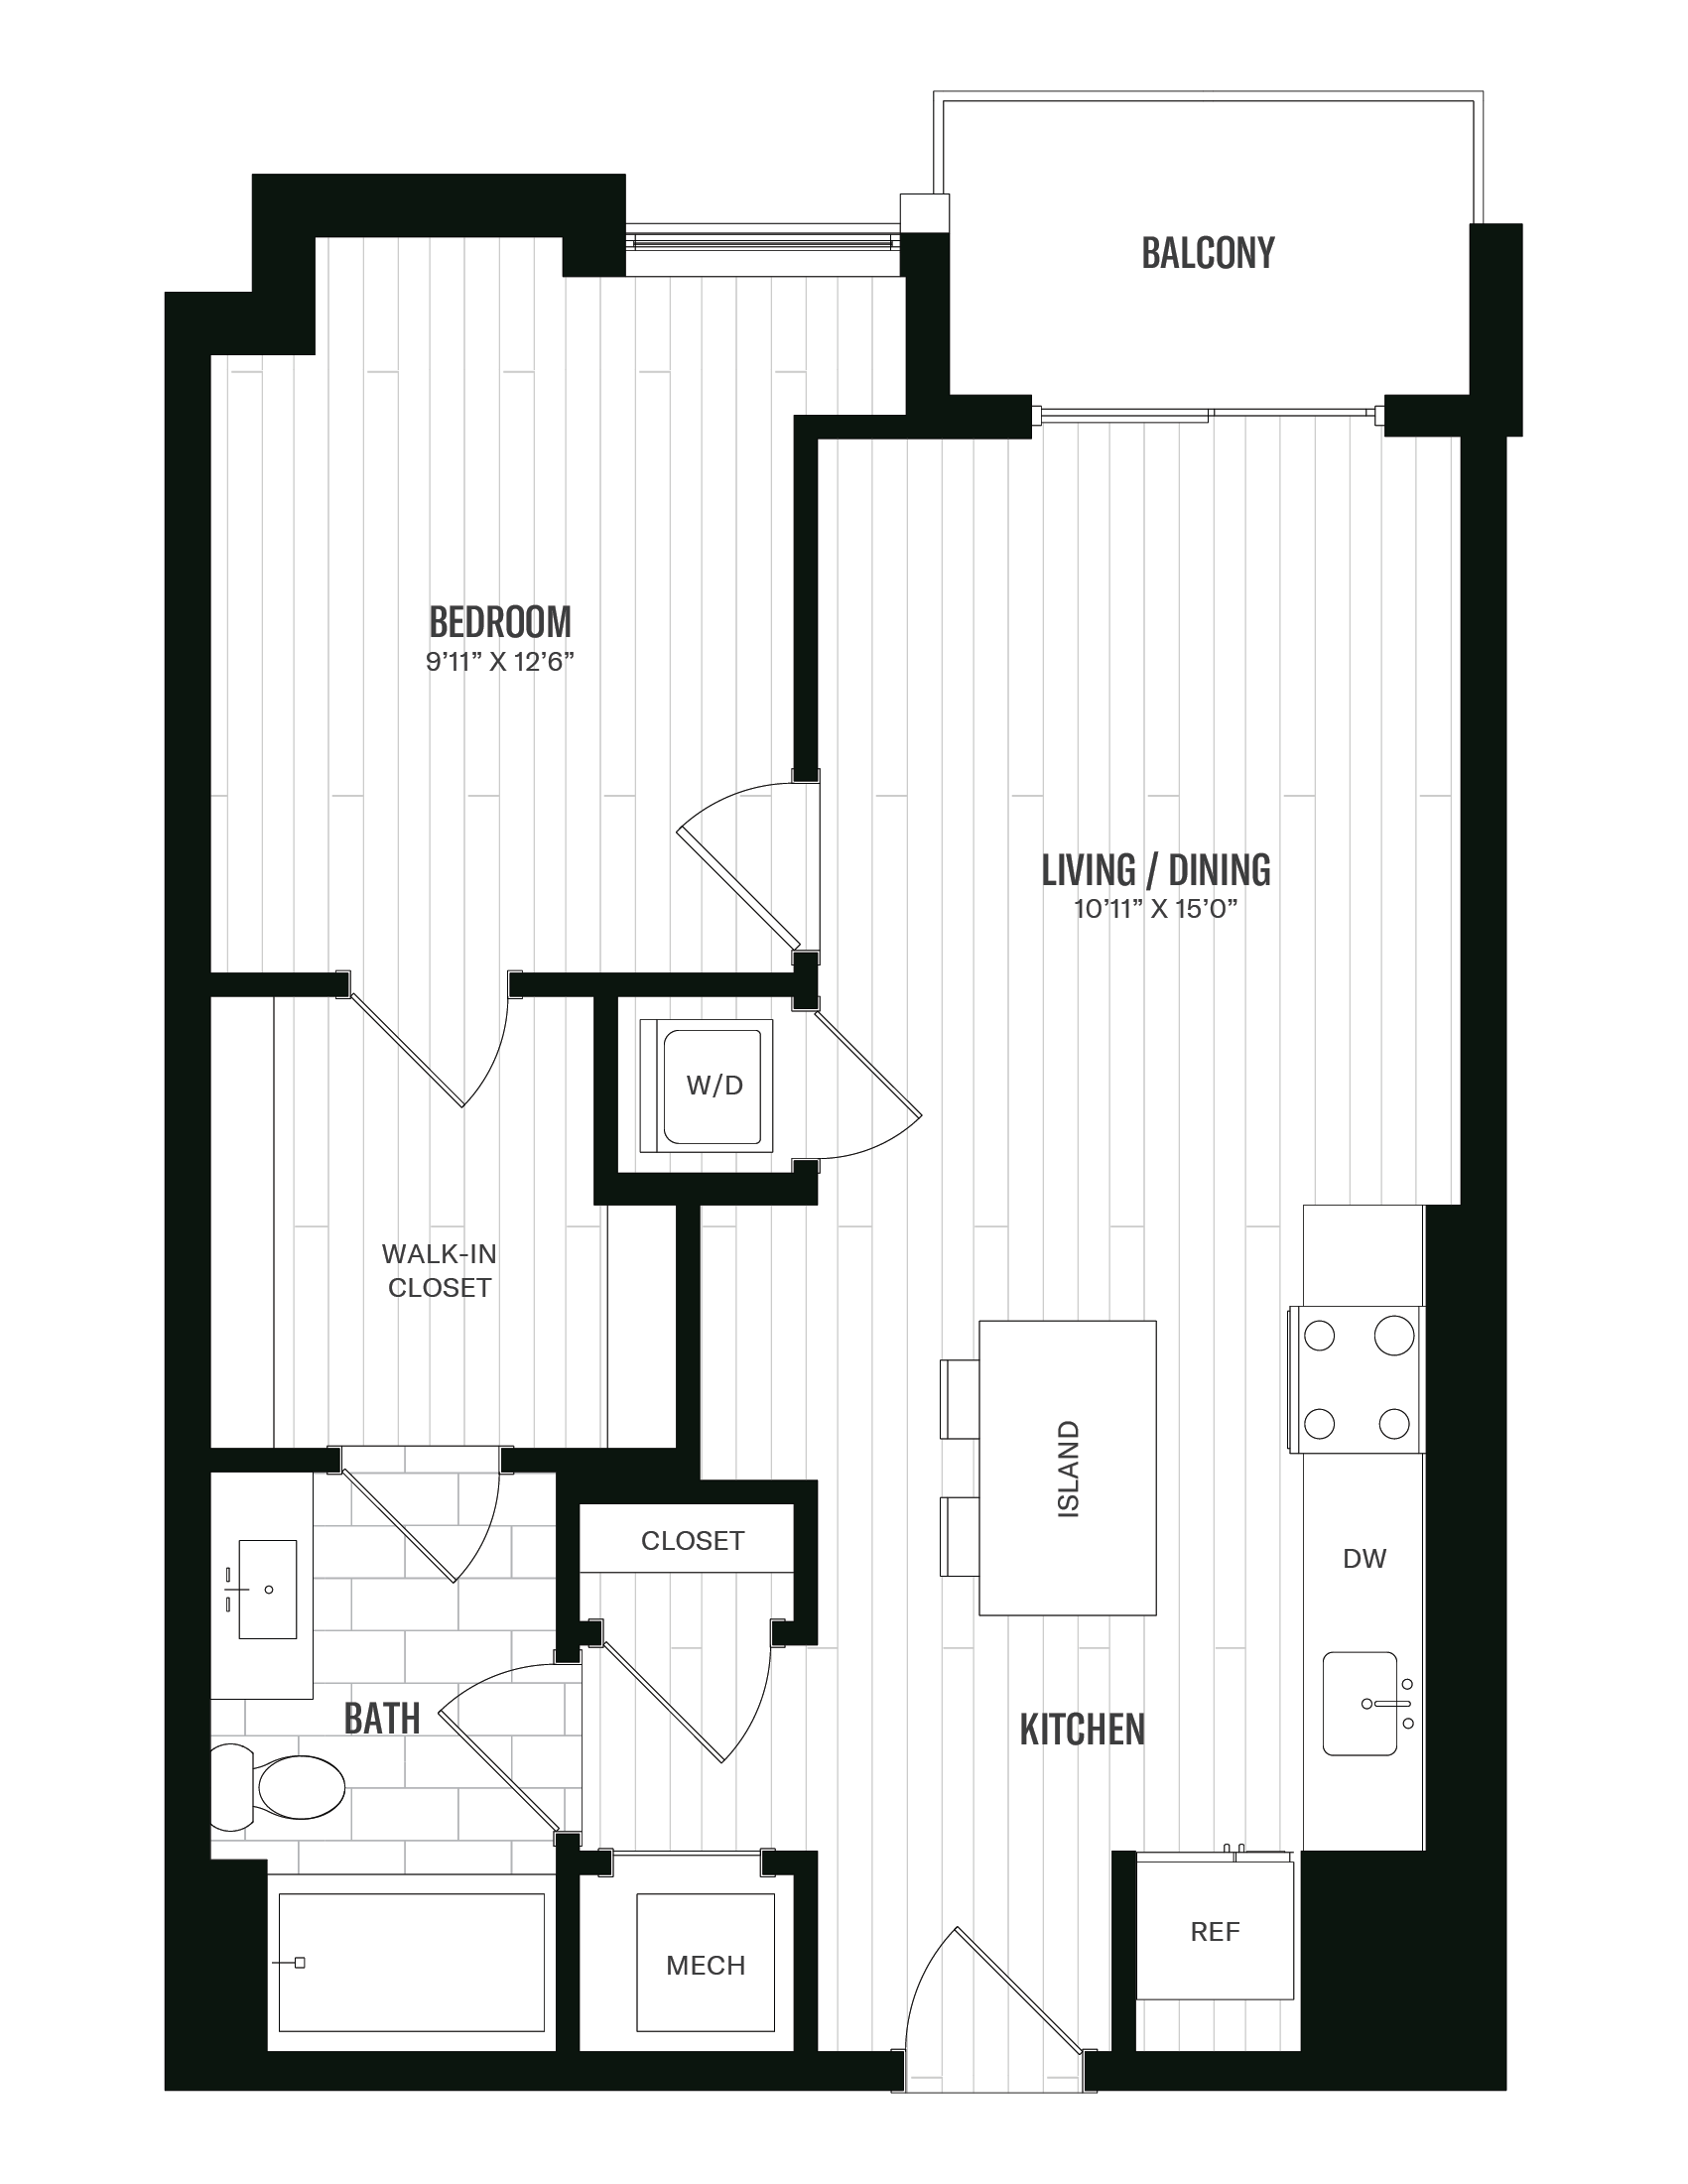 Floorplan image of unit 519